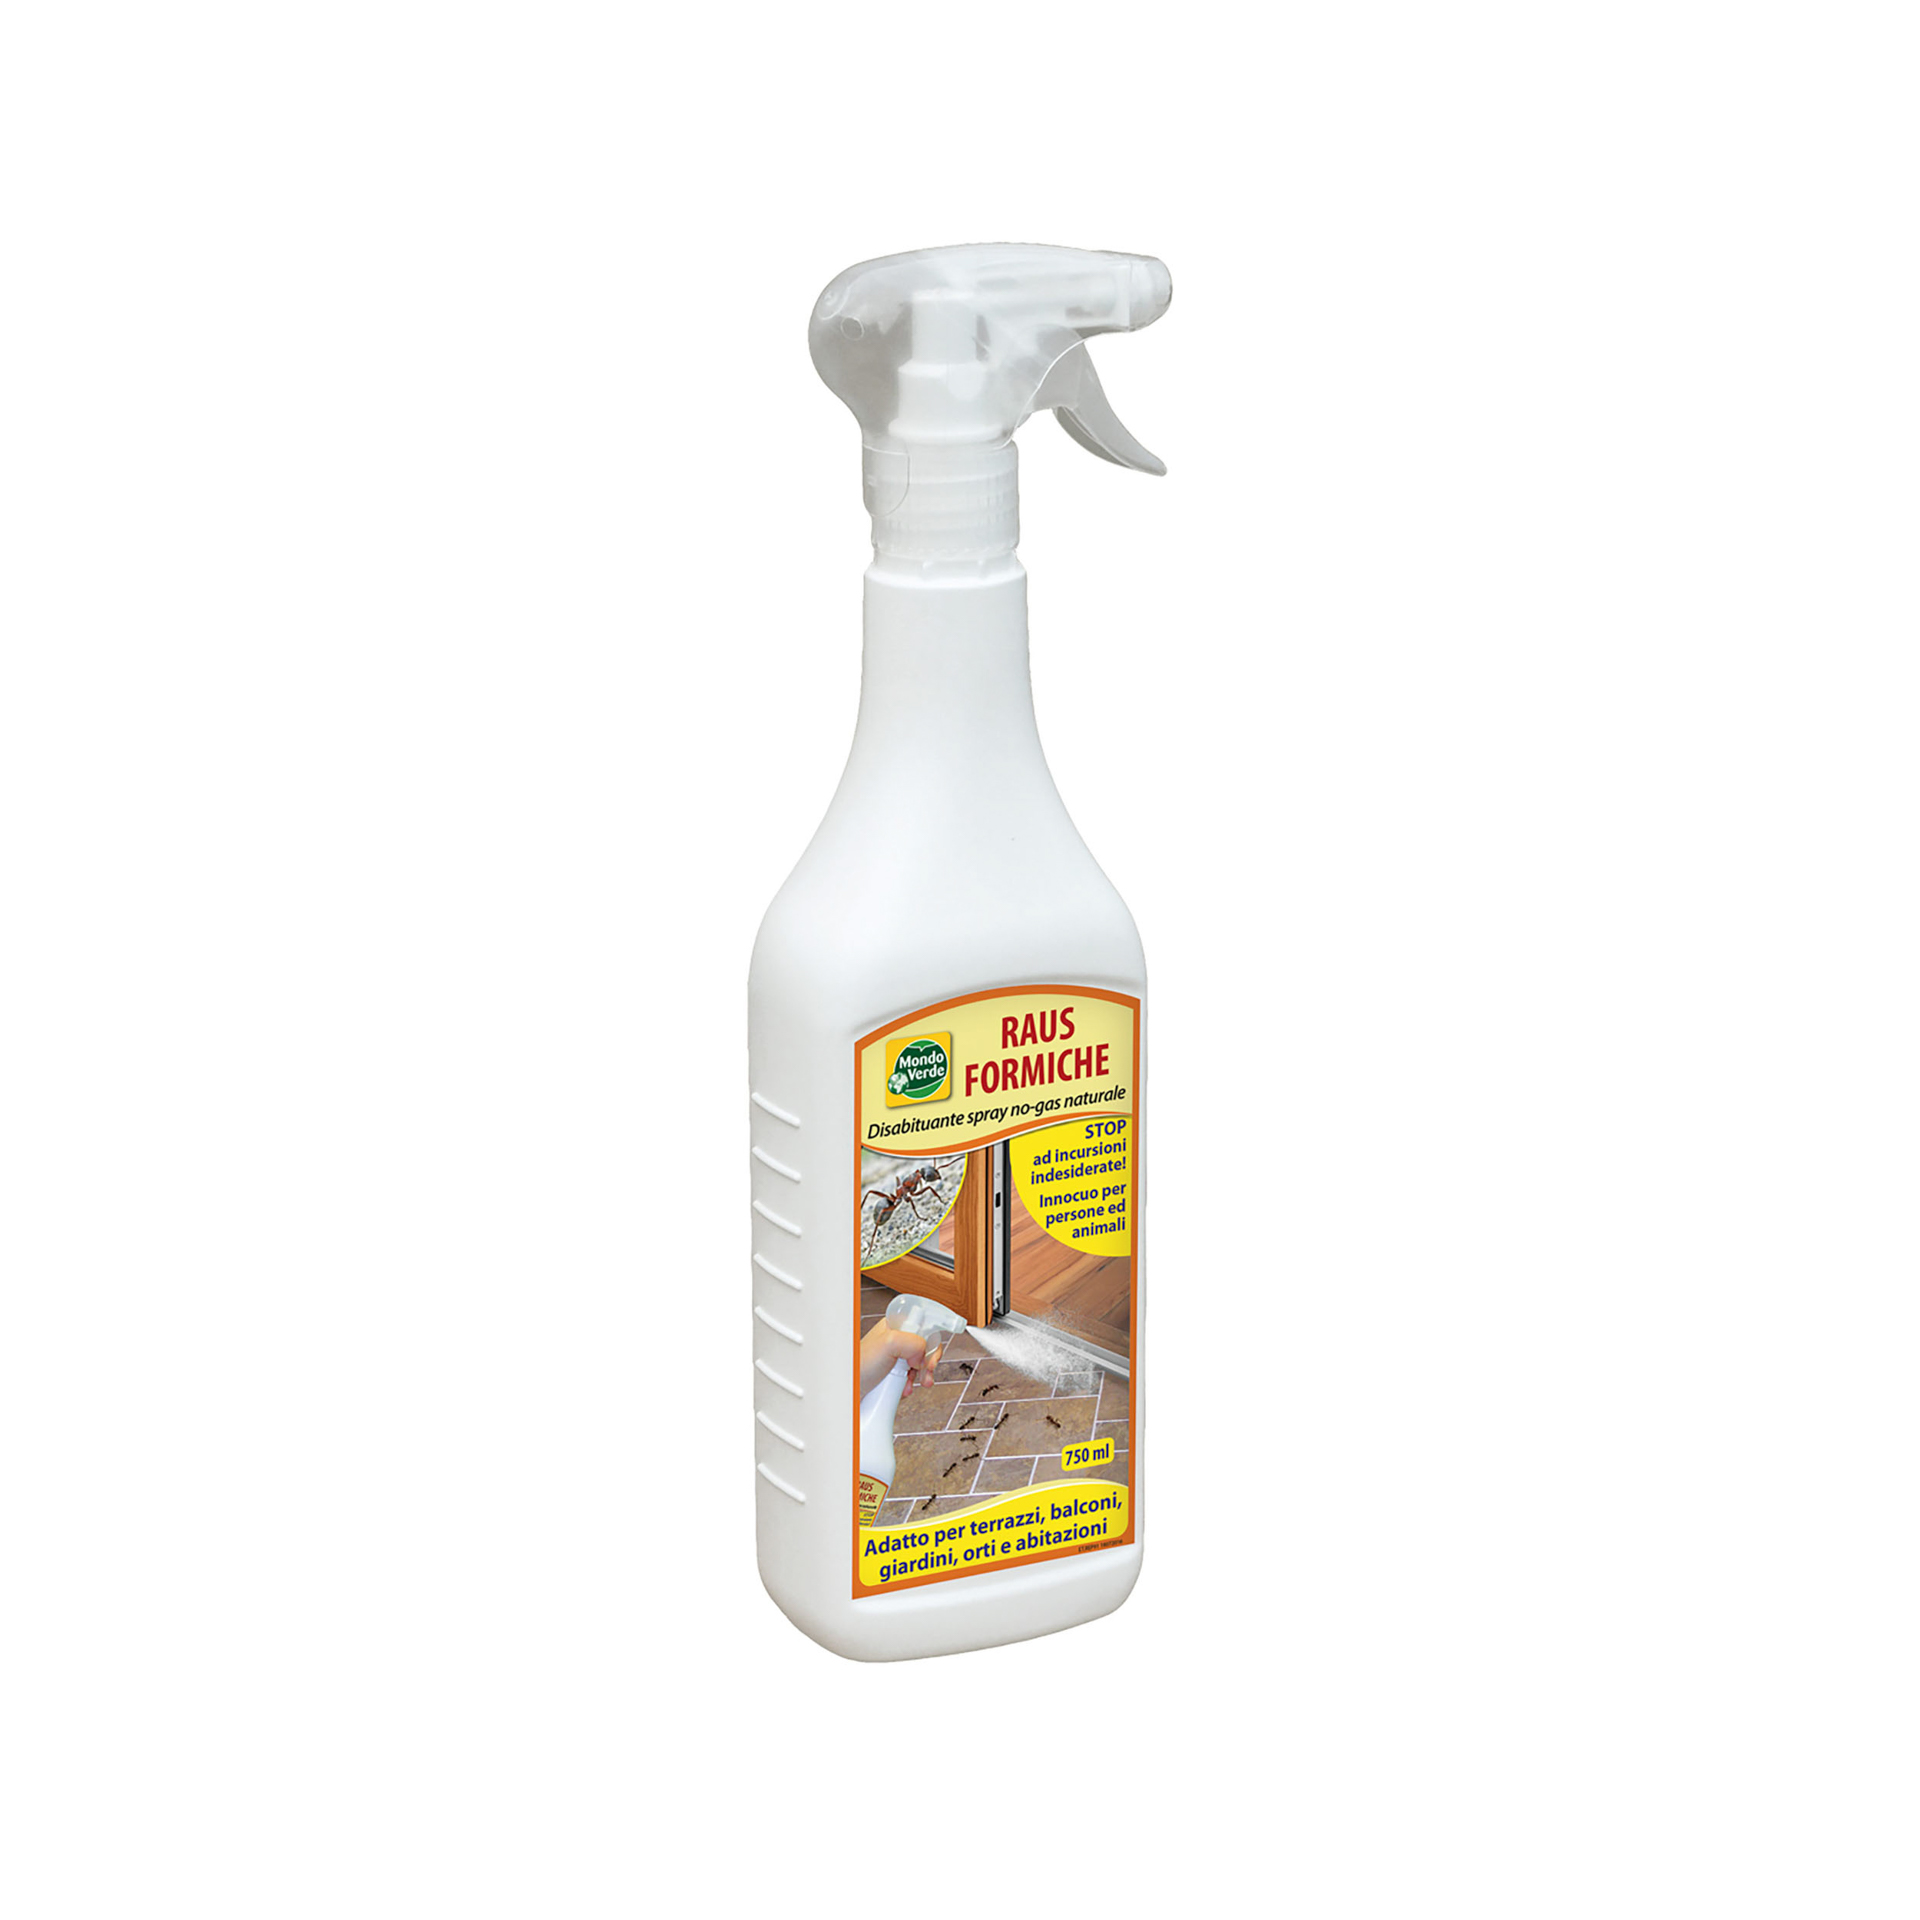 Repellente per formiche - Confezione da 750 ml, , large